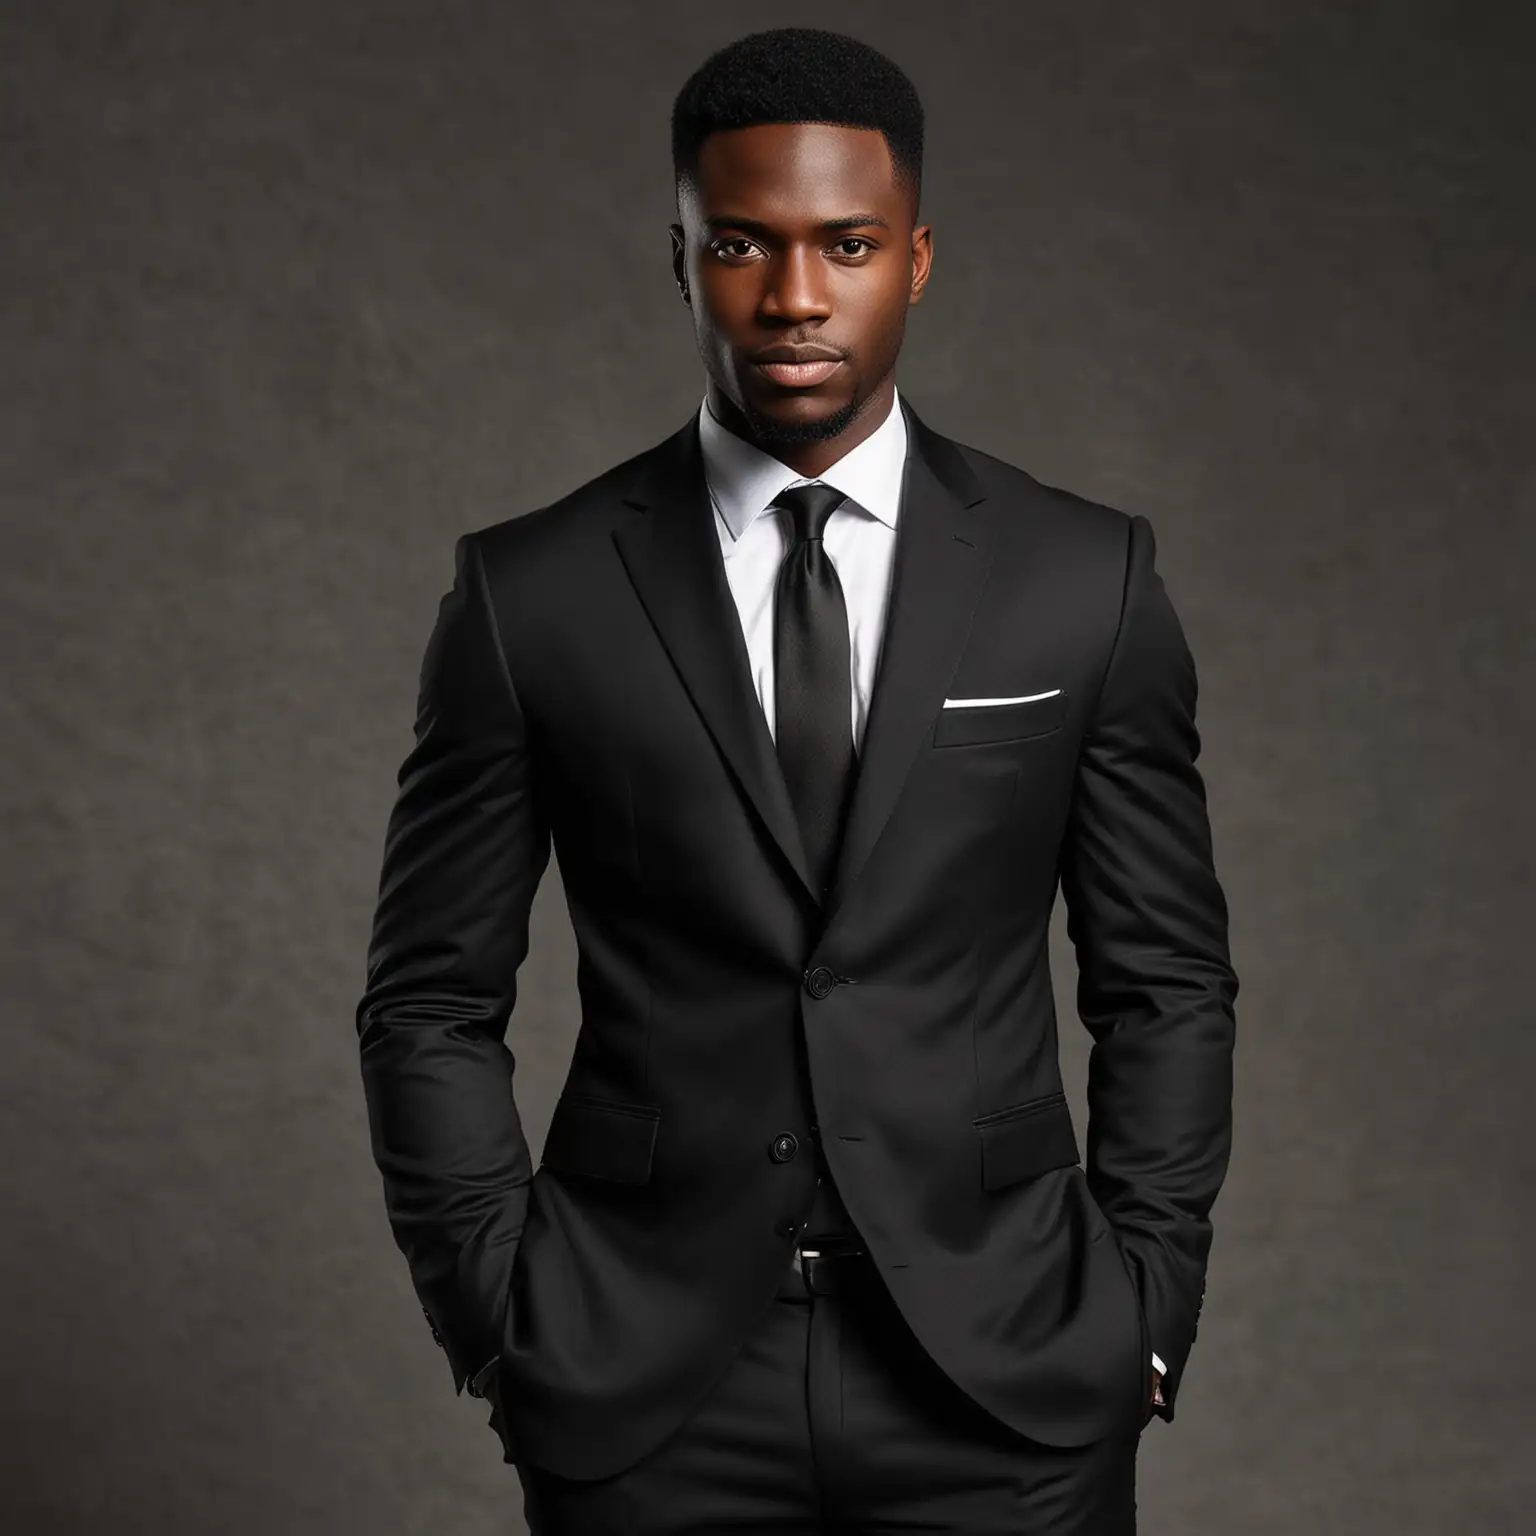 Elegant Gentleman in a Sleek Black Suit